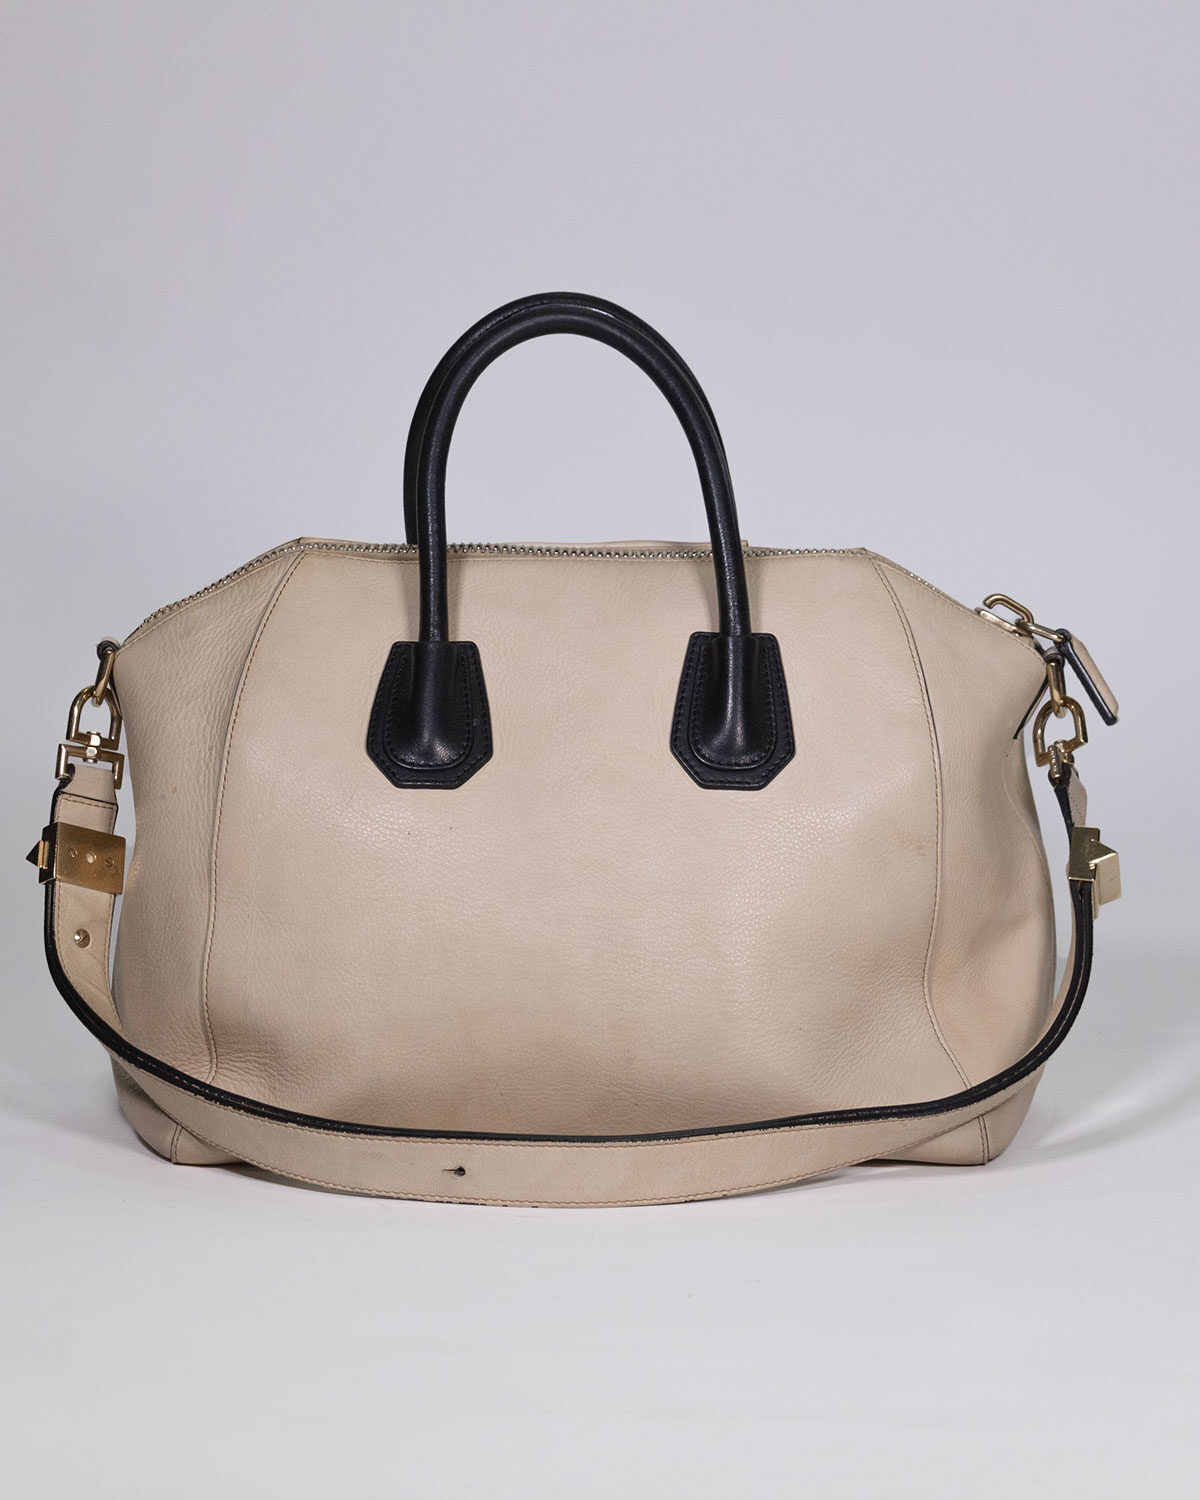 Givenchy - Antigona bag